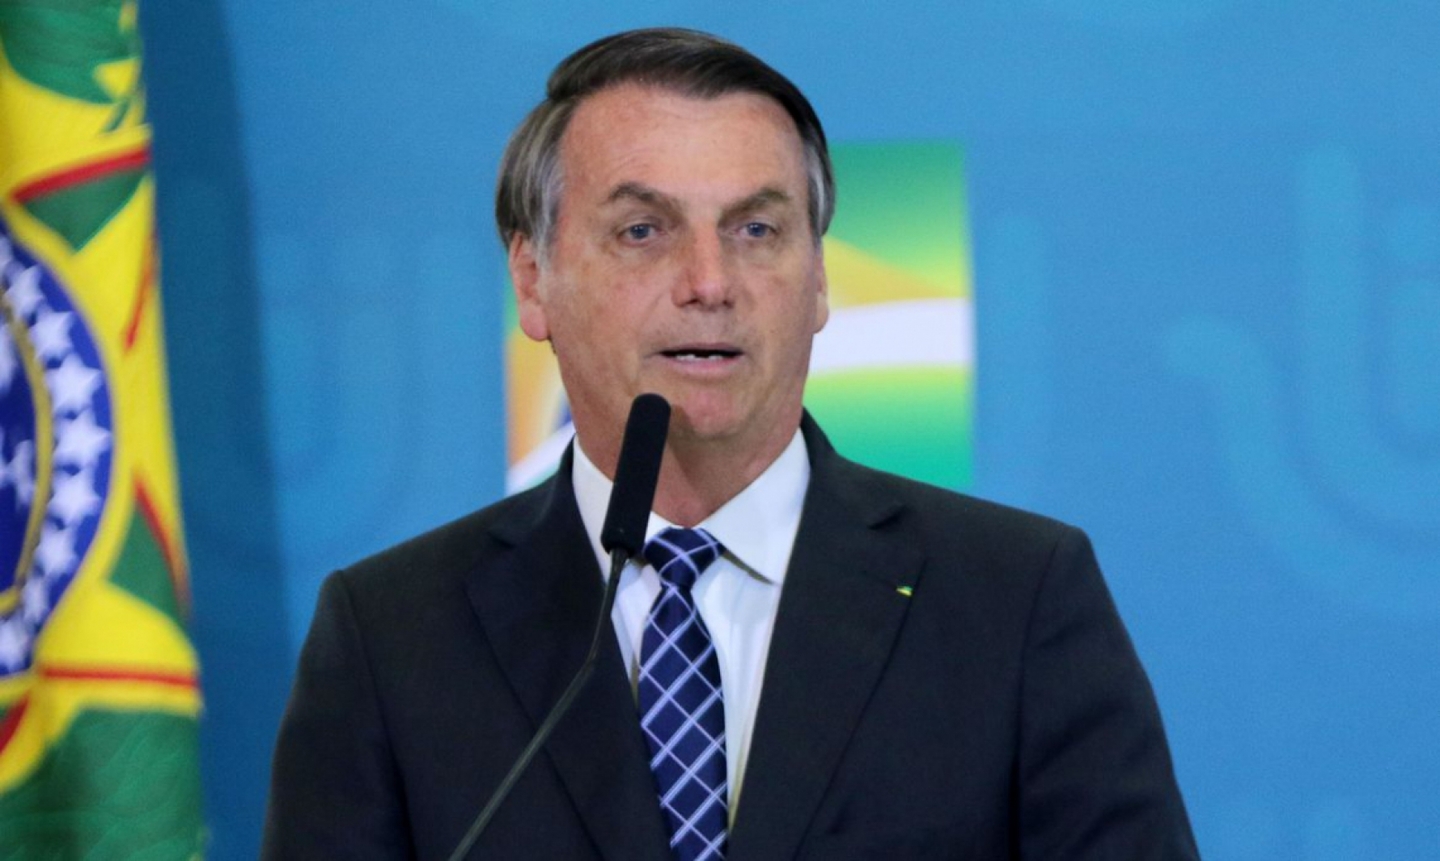 Ministra Cármen Lúcia envia para 1ª instância pedidos de investigação contra Bolsonaro